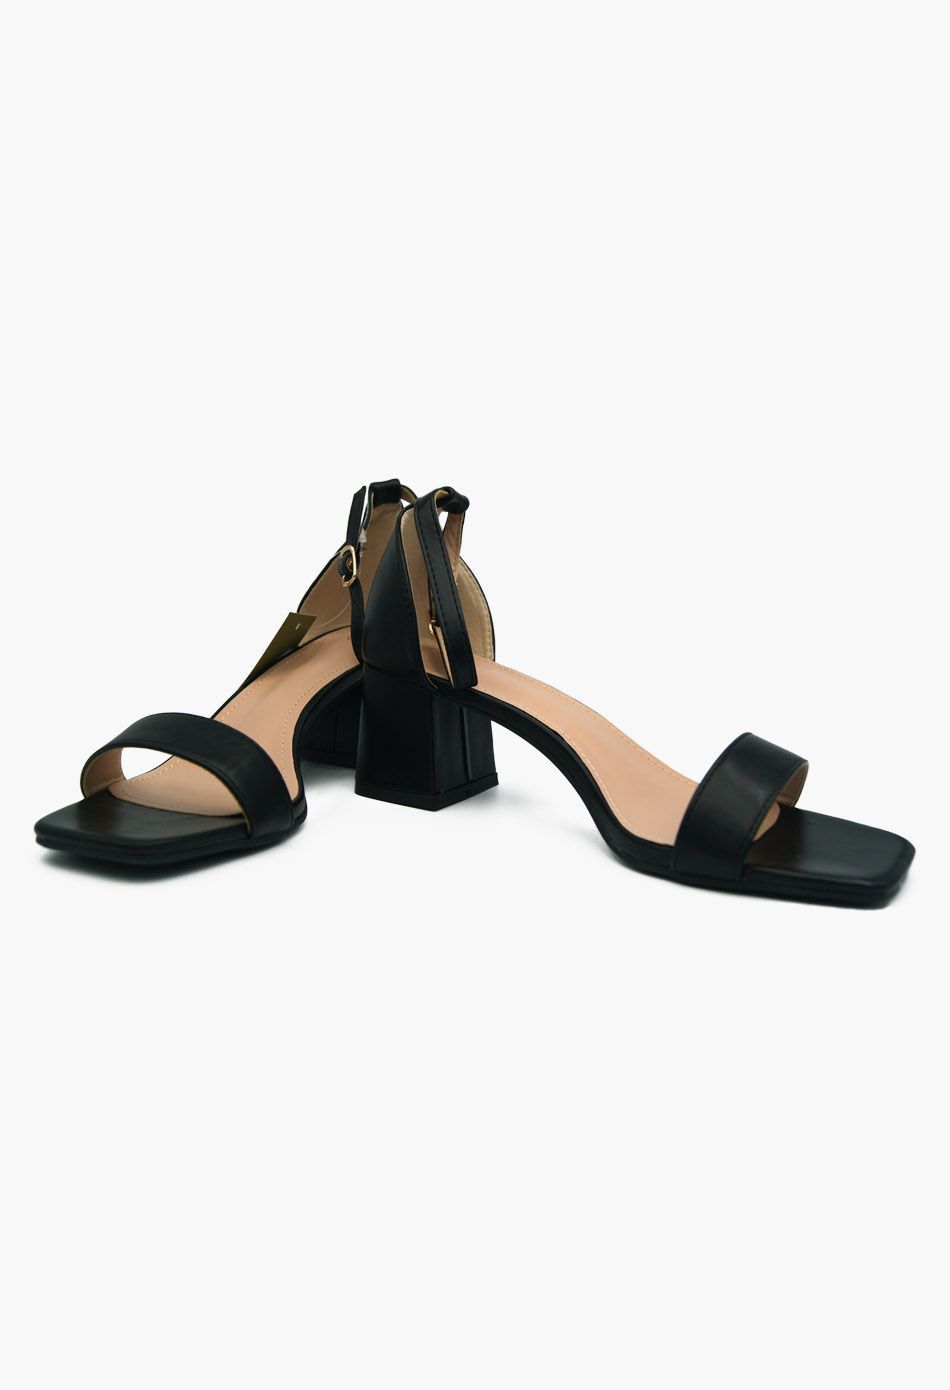 Γυναικεία Πέδιλα με Μπαρέτα και Χοντρό Χαμηλό Τακούνι Μαύρο / F1603-black Ανοιχτά Παπούτσια joya.gr